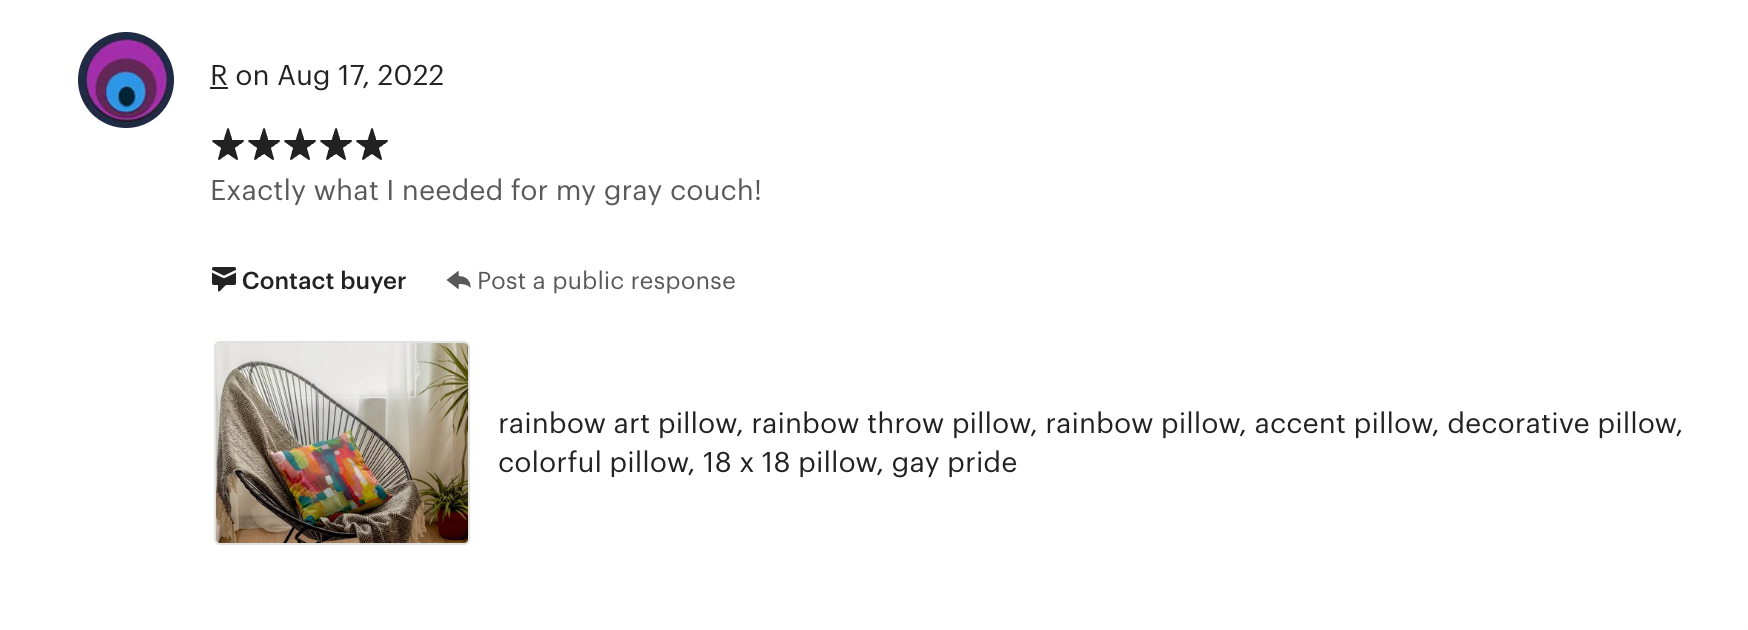 Over the Rainbow-Throw Pillow